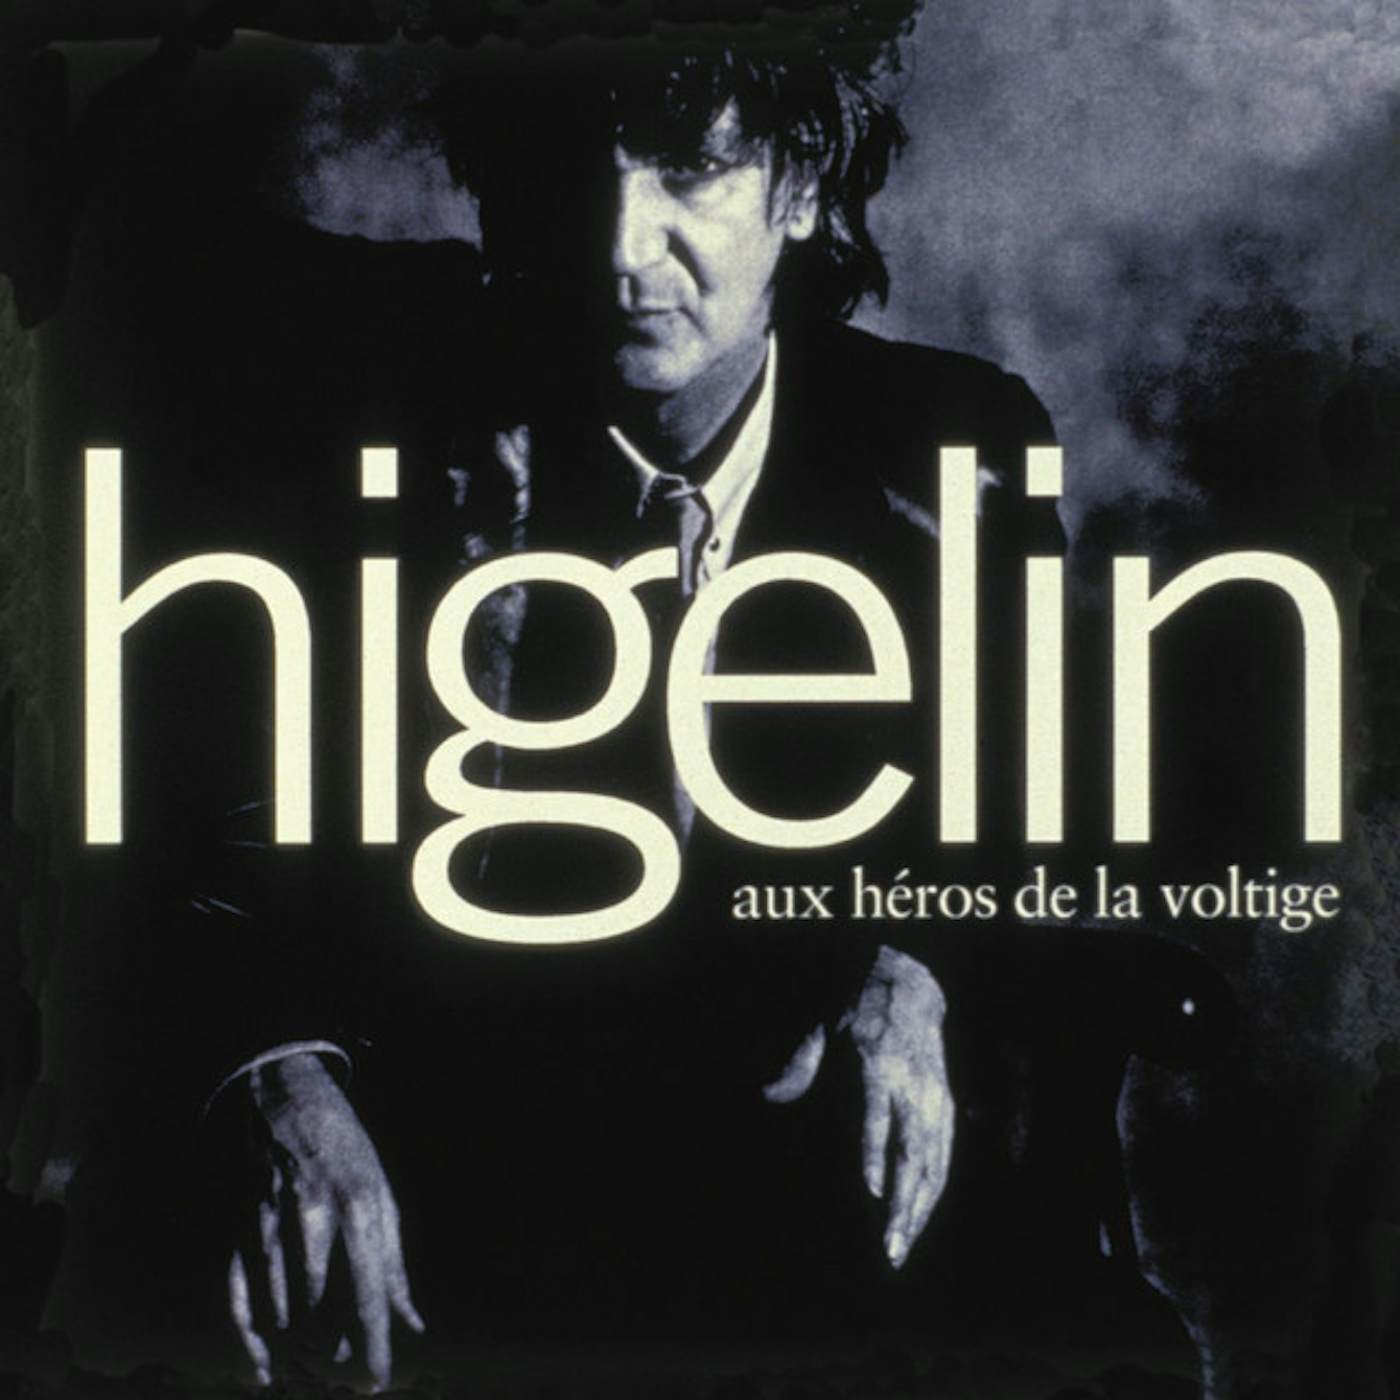 Jacques Higelin AUX HEROS DE VOLTIGE CD